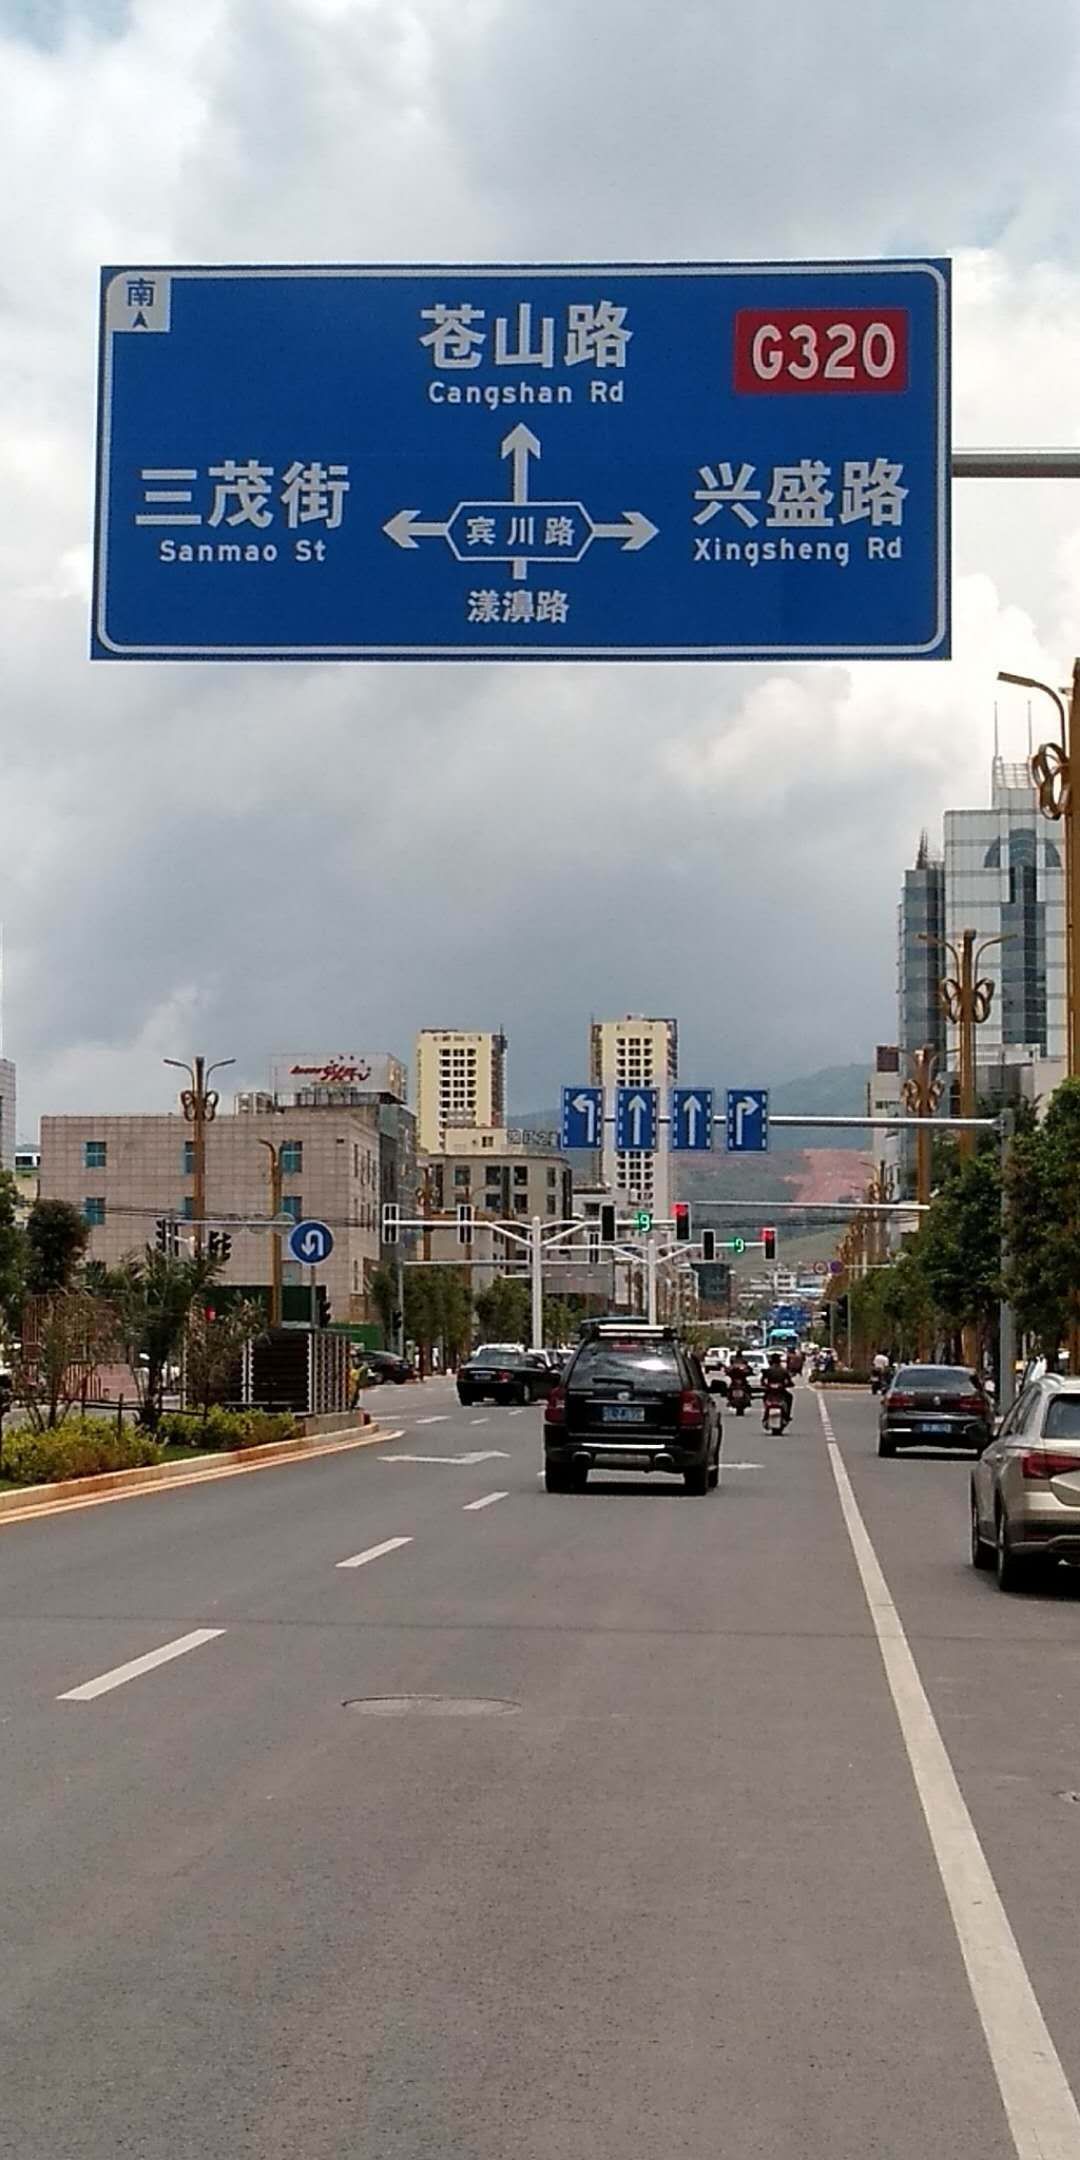 昆明致安供应道路指示标牌云南昆明交通设施